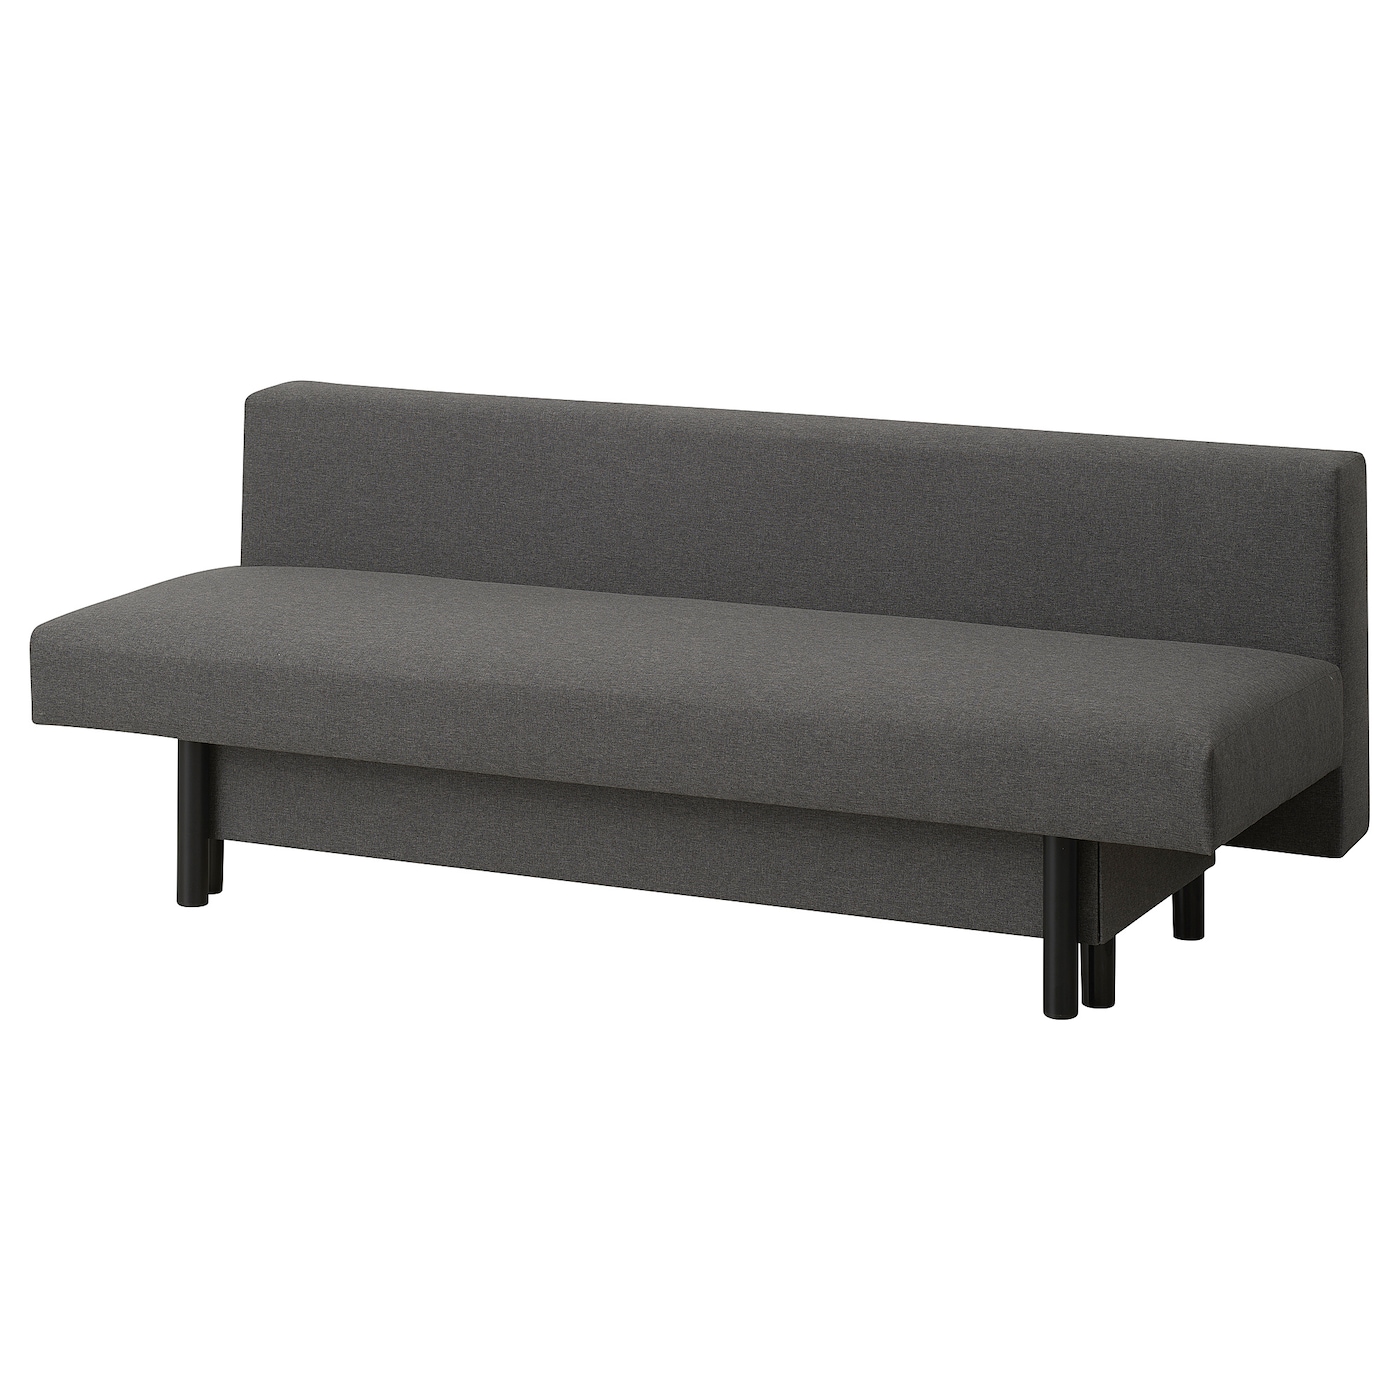 3-местный диван-кровать - IKEA RÄFSTA/RAFSTA, 71x95x194см, серый, РАФСТА ИКЕА